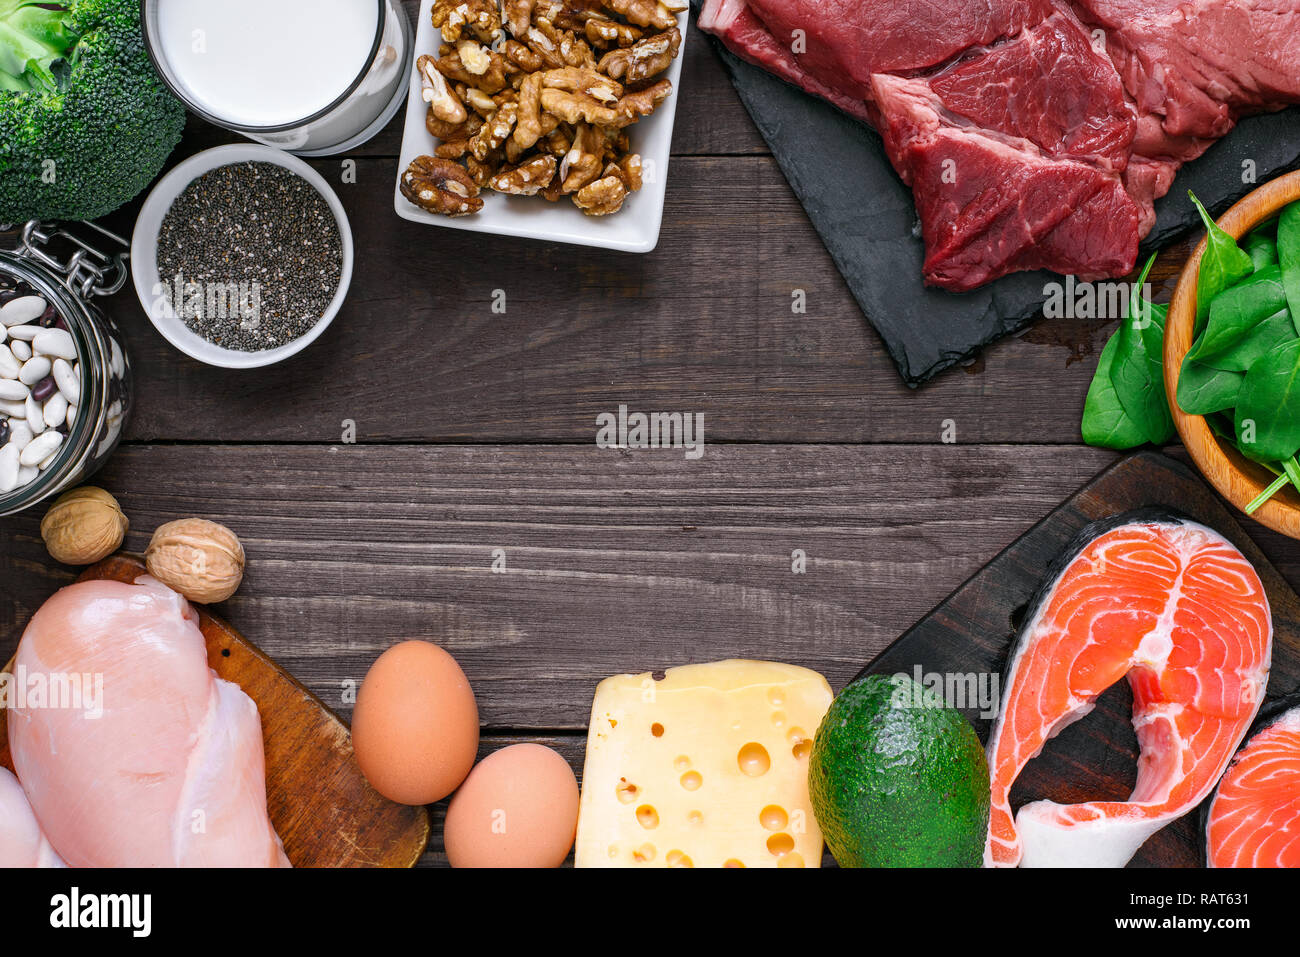 Proteinreiche Lebensmittel - Fisch, Fleisch, Geflügel, Nüsse, Eier, Milch und Gemüse. Gesunde Ernährung und Diät Konzept. Ansicht von oben mit der Kopie Raum Stockfoto